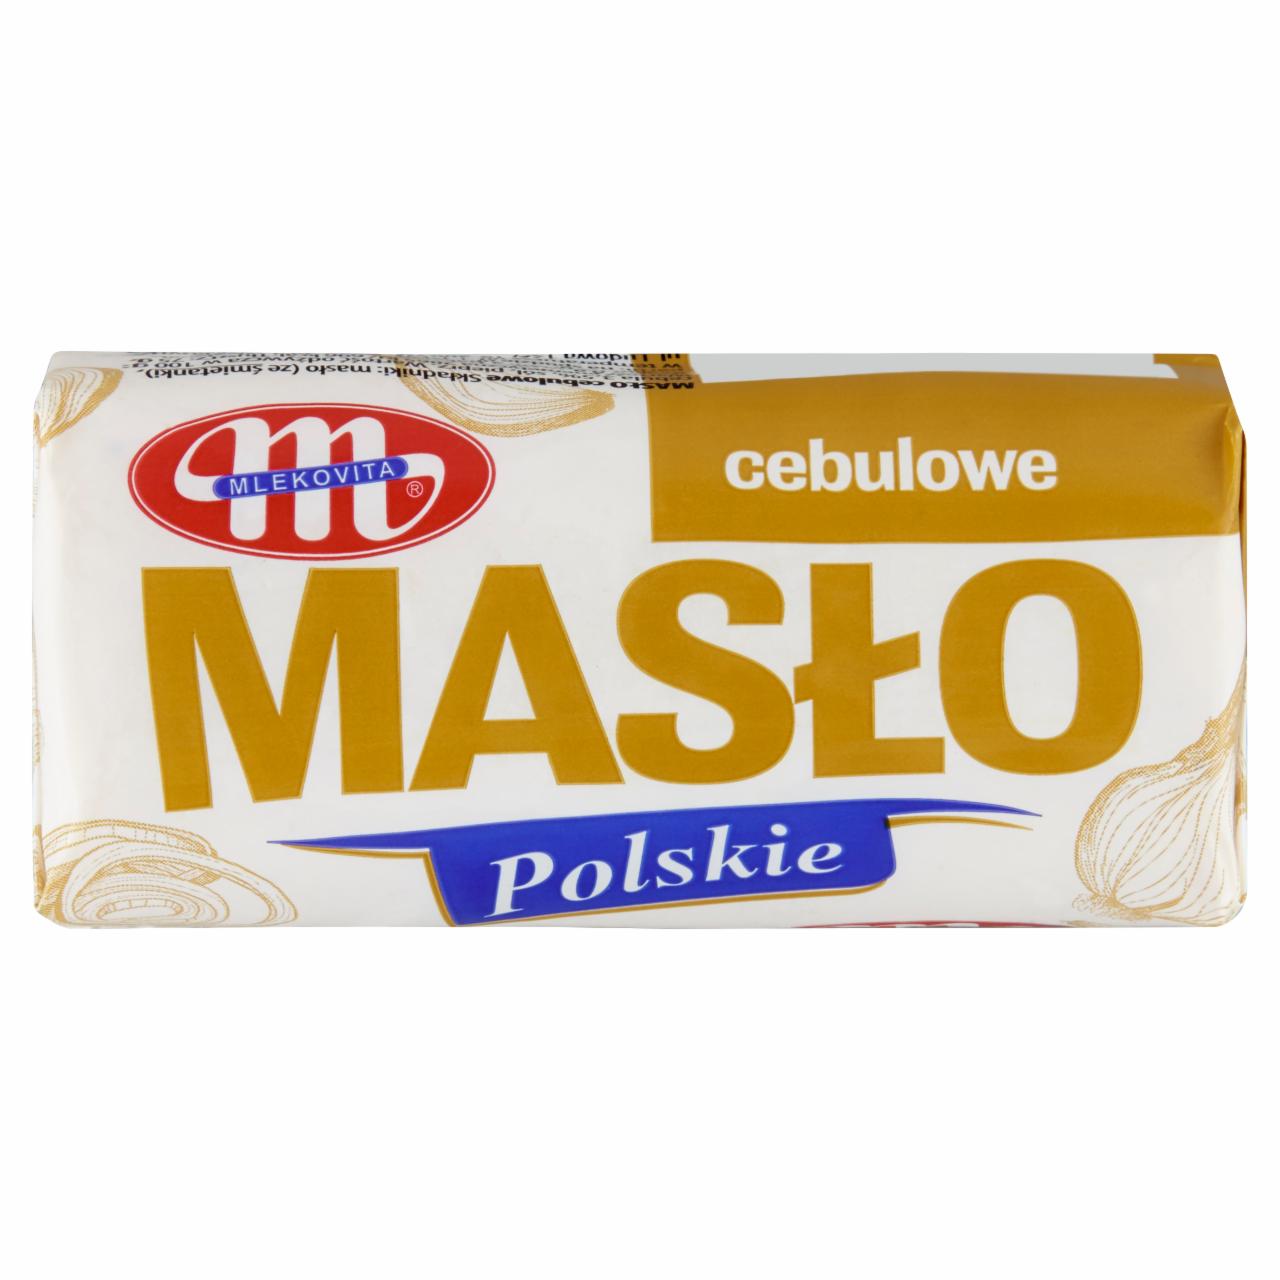 Zdjęcia - Mlekovita Masło Polskie cebulowe 80 g